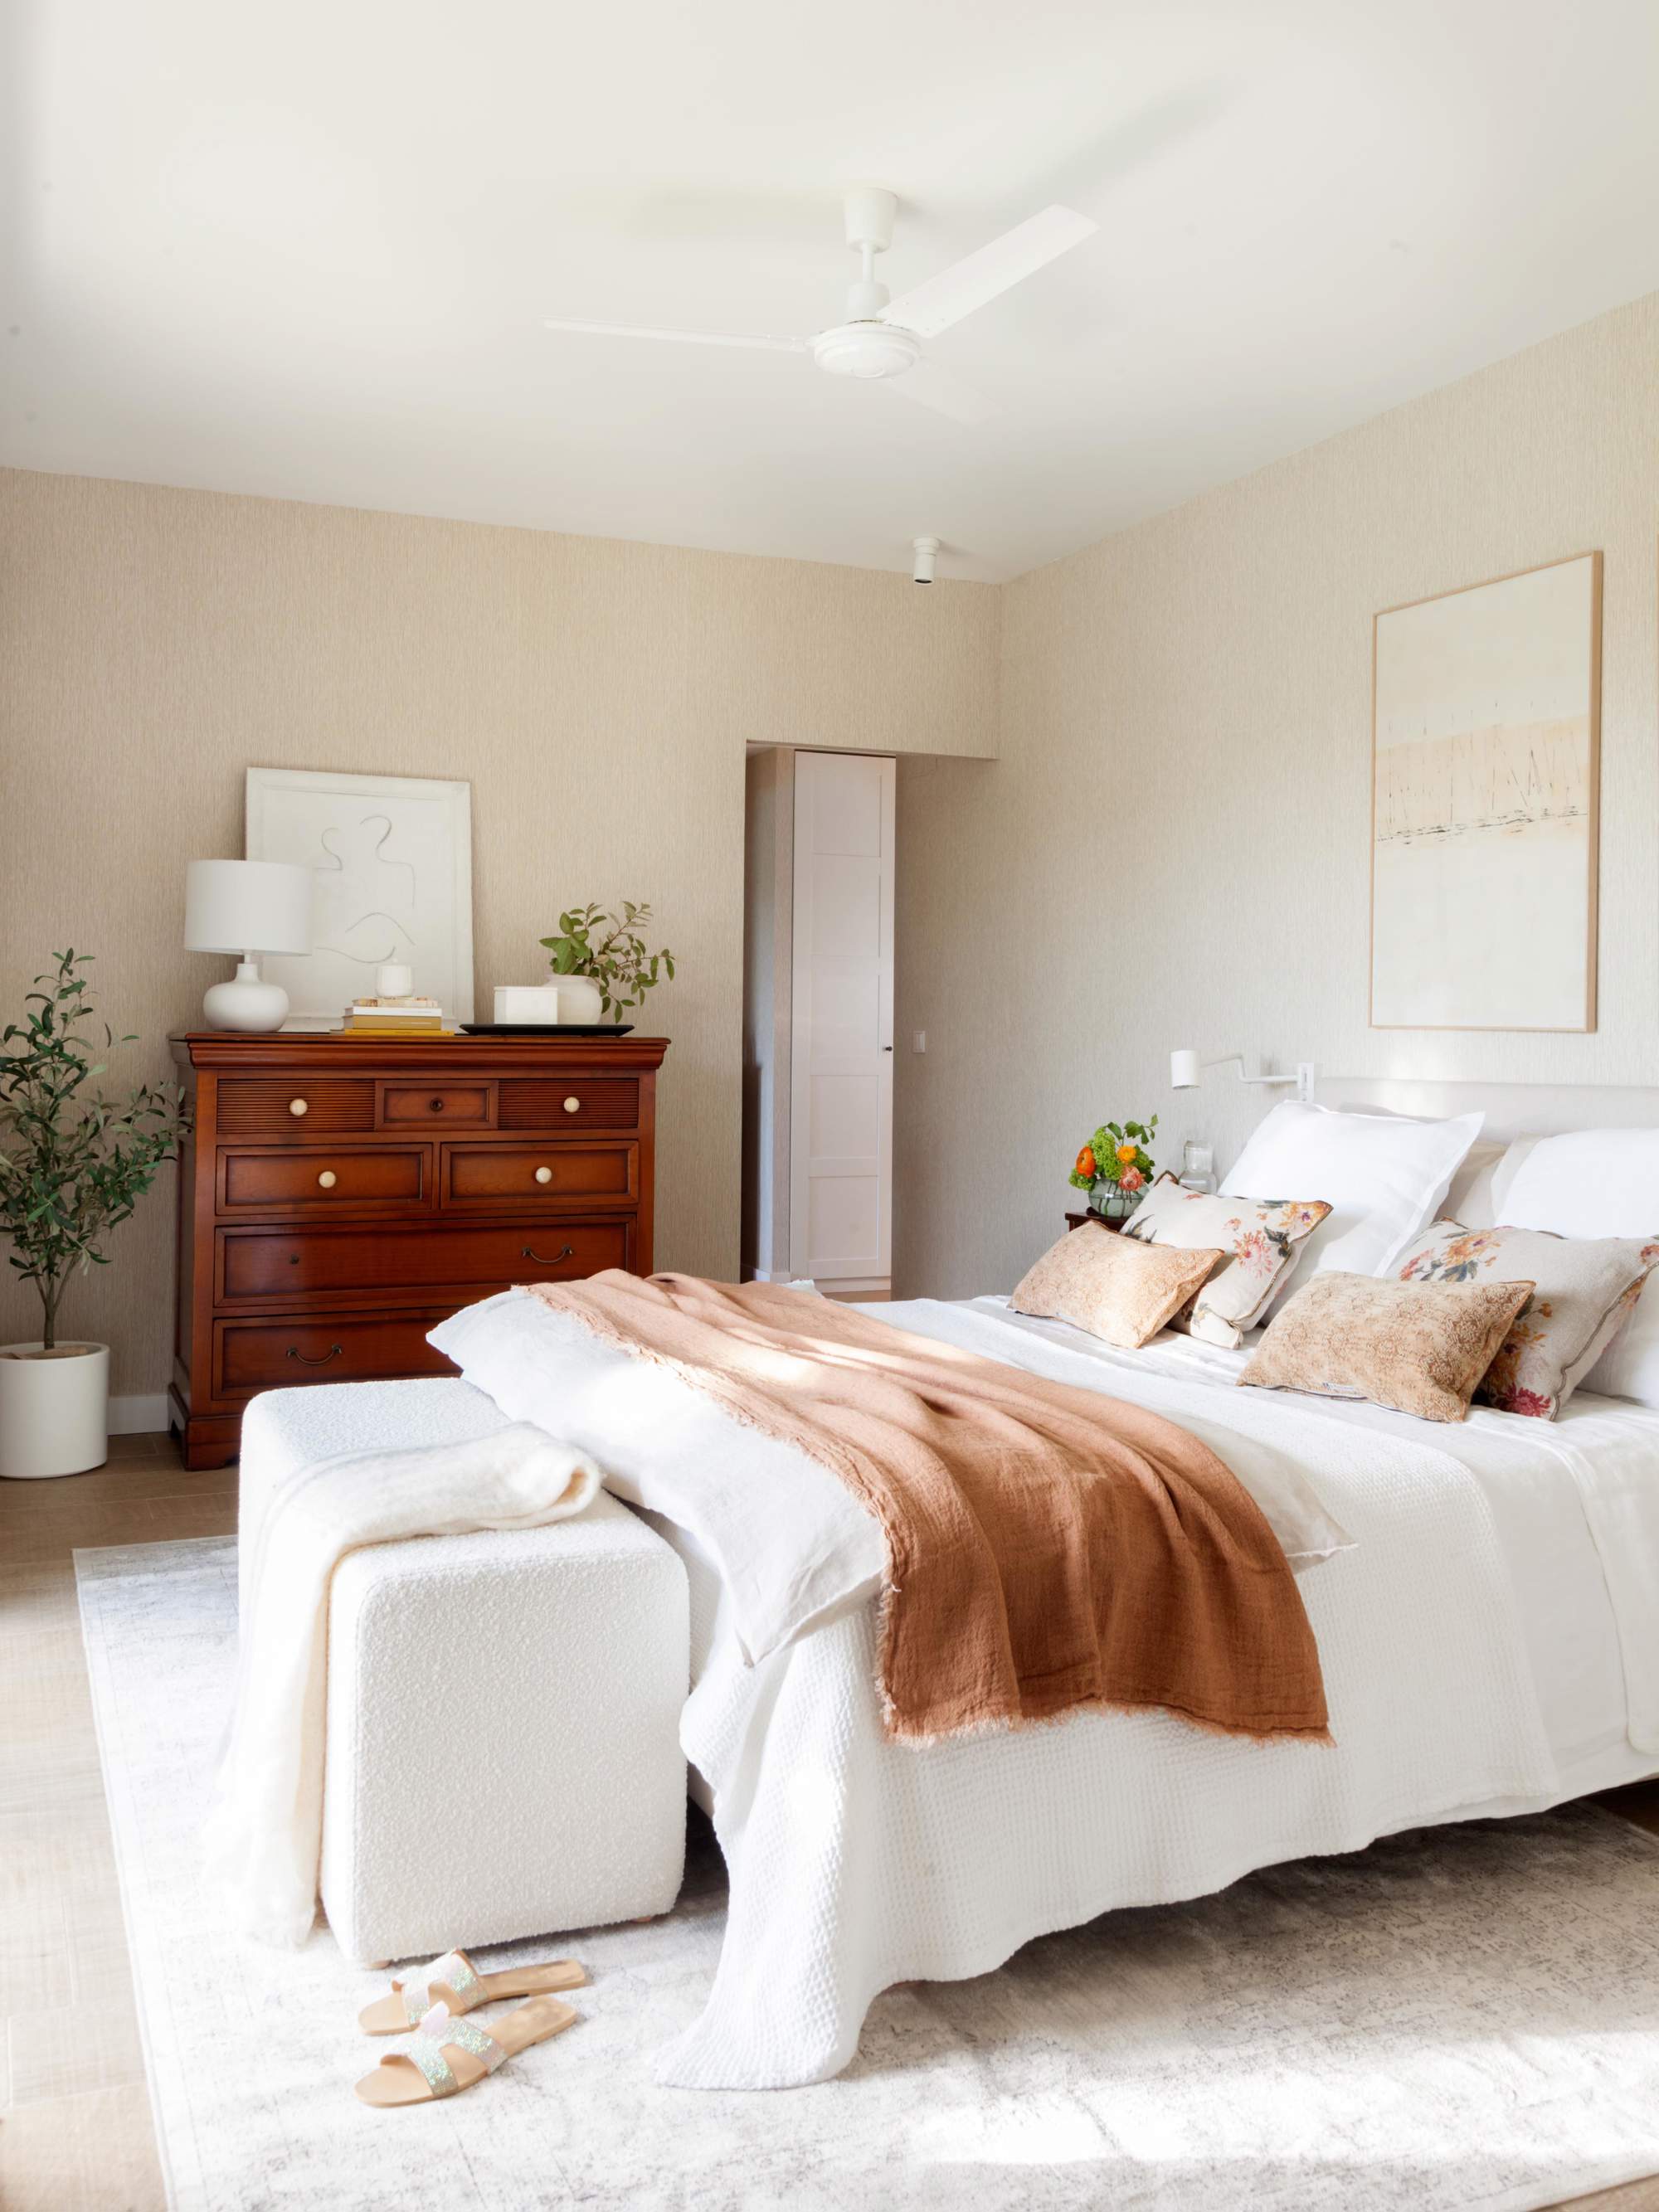 Dormitorio con ropa de cama blanca y rosa, puff a los pies de la cama y cómoda, de madera.